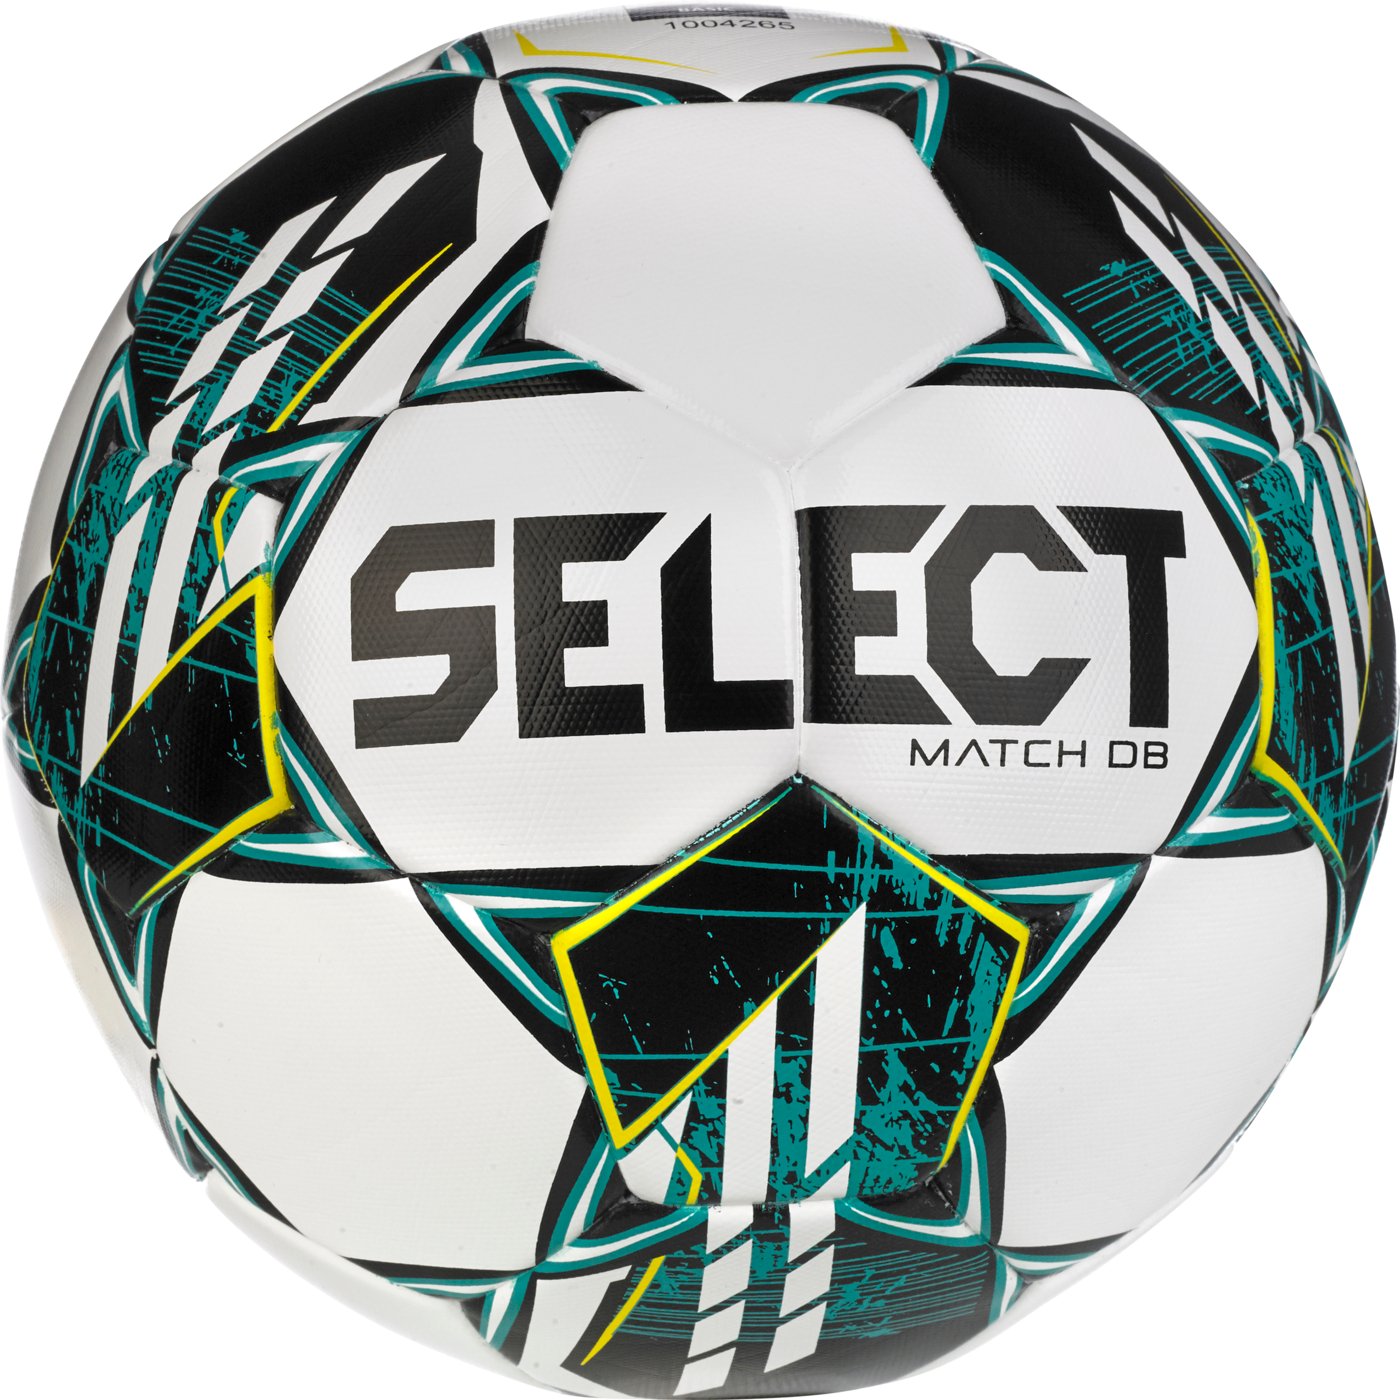 Мяч футбольный SELECT Match DB v23 (338) бел/зеленый, 5, 5